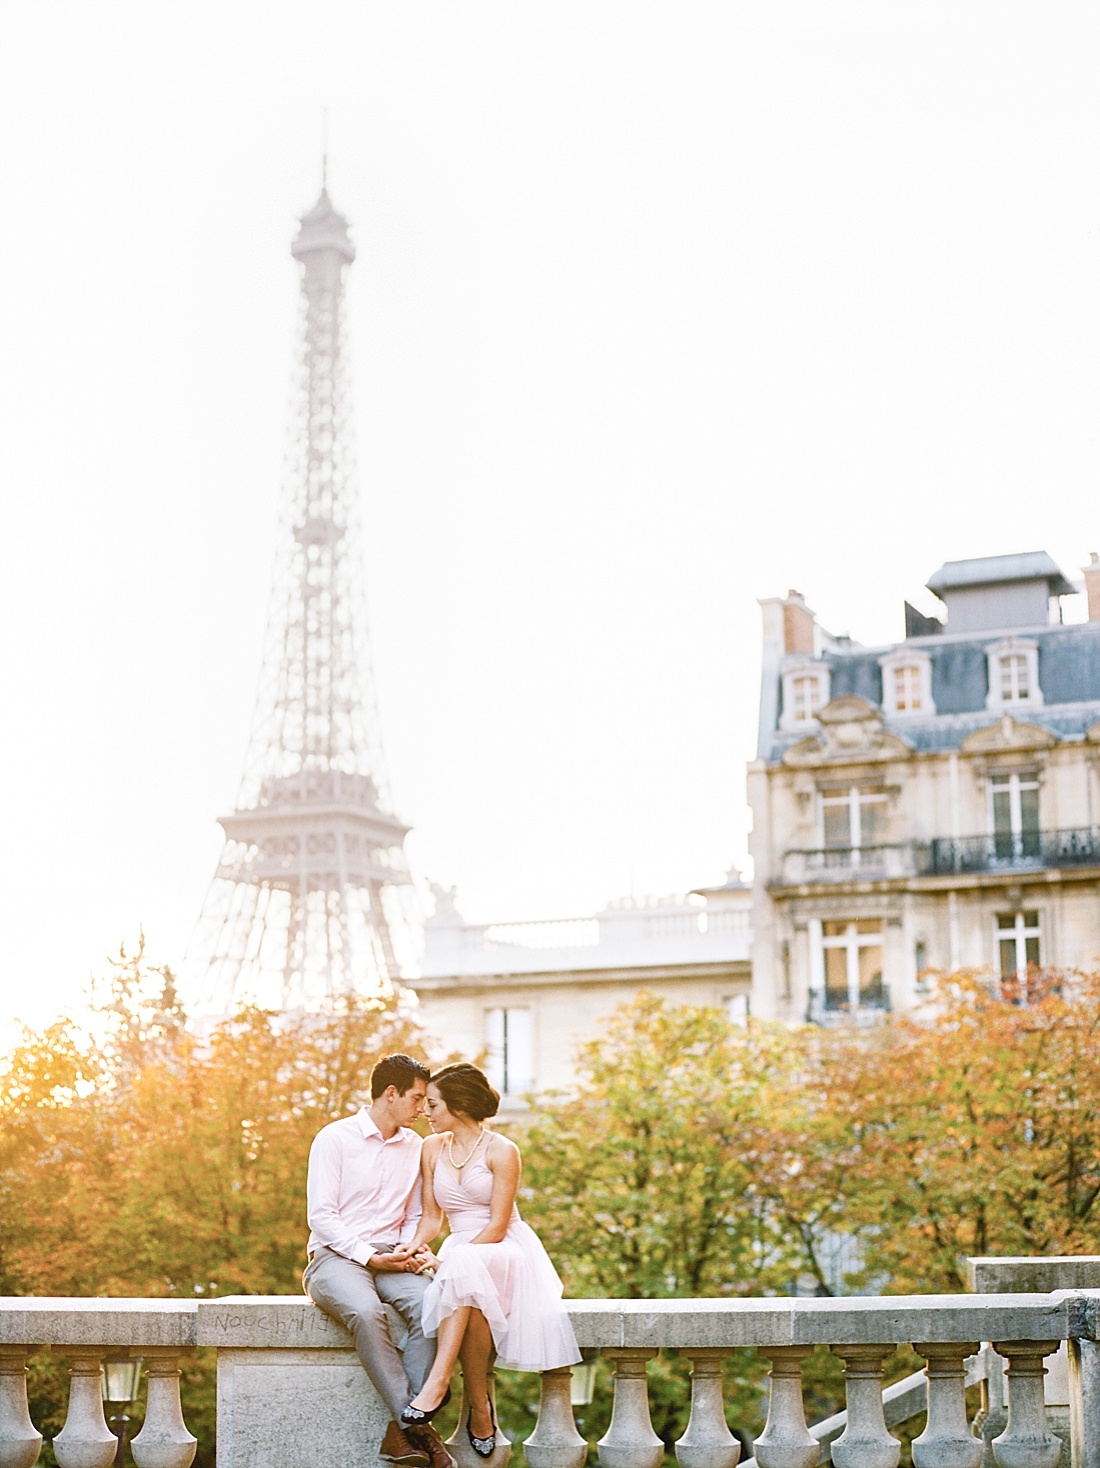 Paris, France honeymoon photographer | Abby Grace